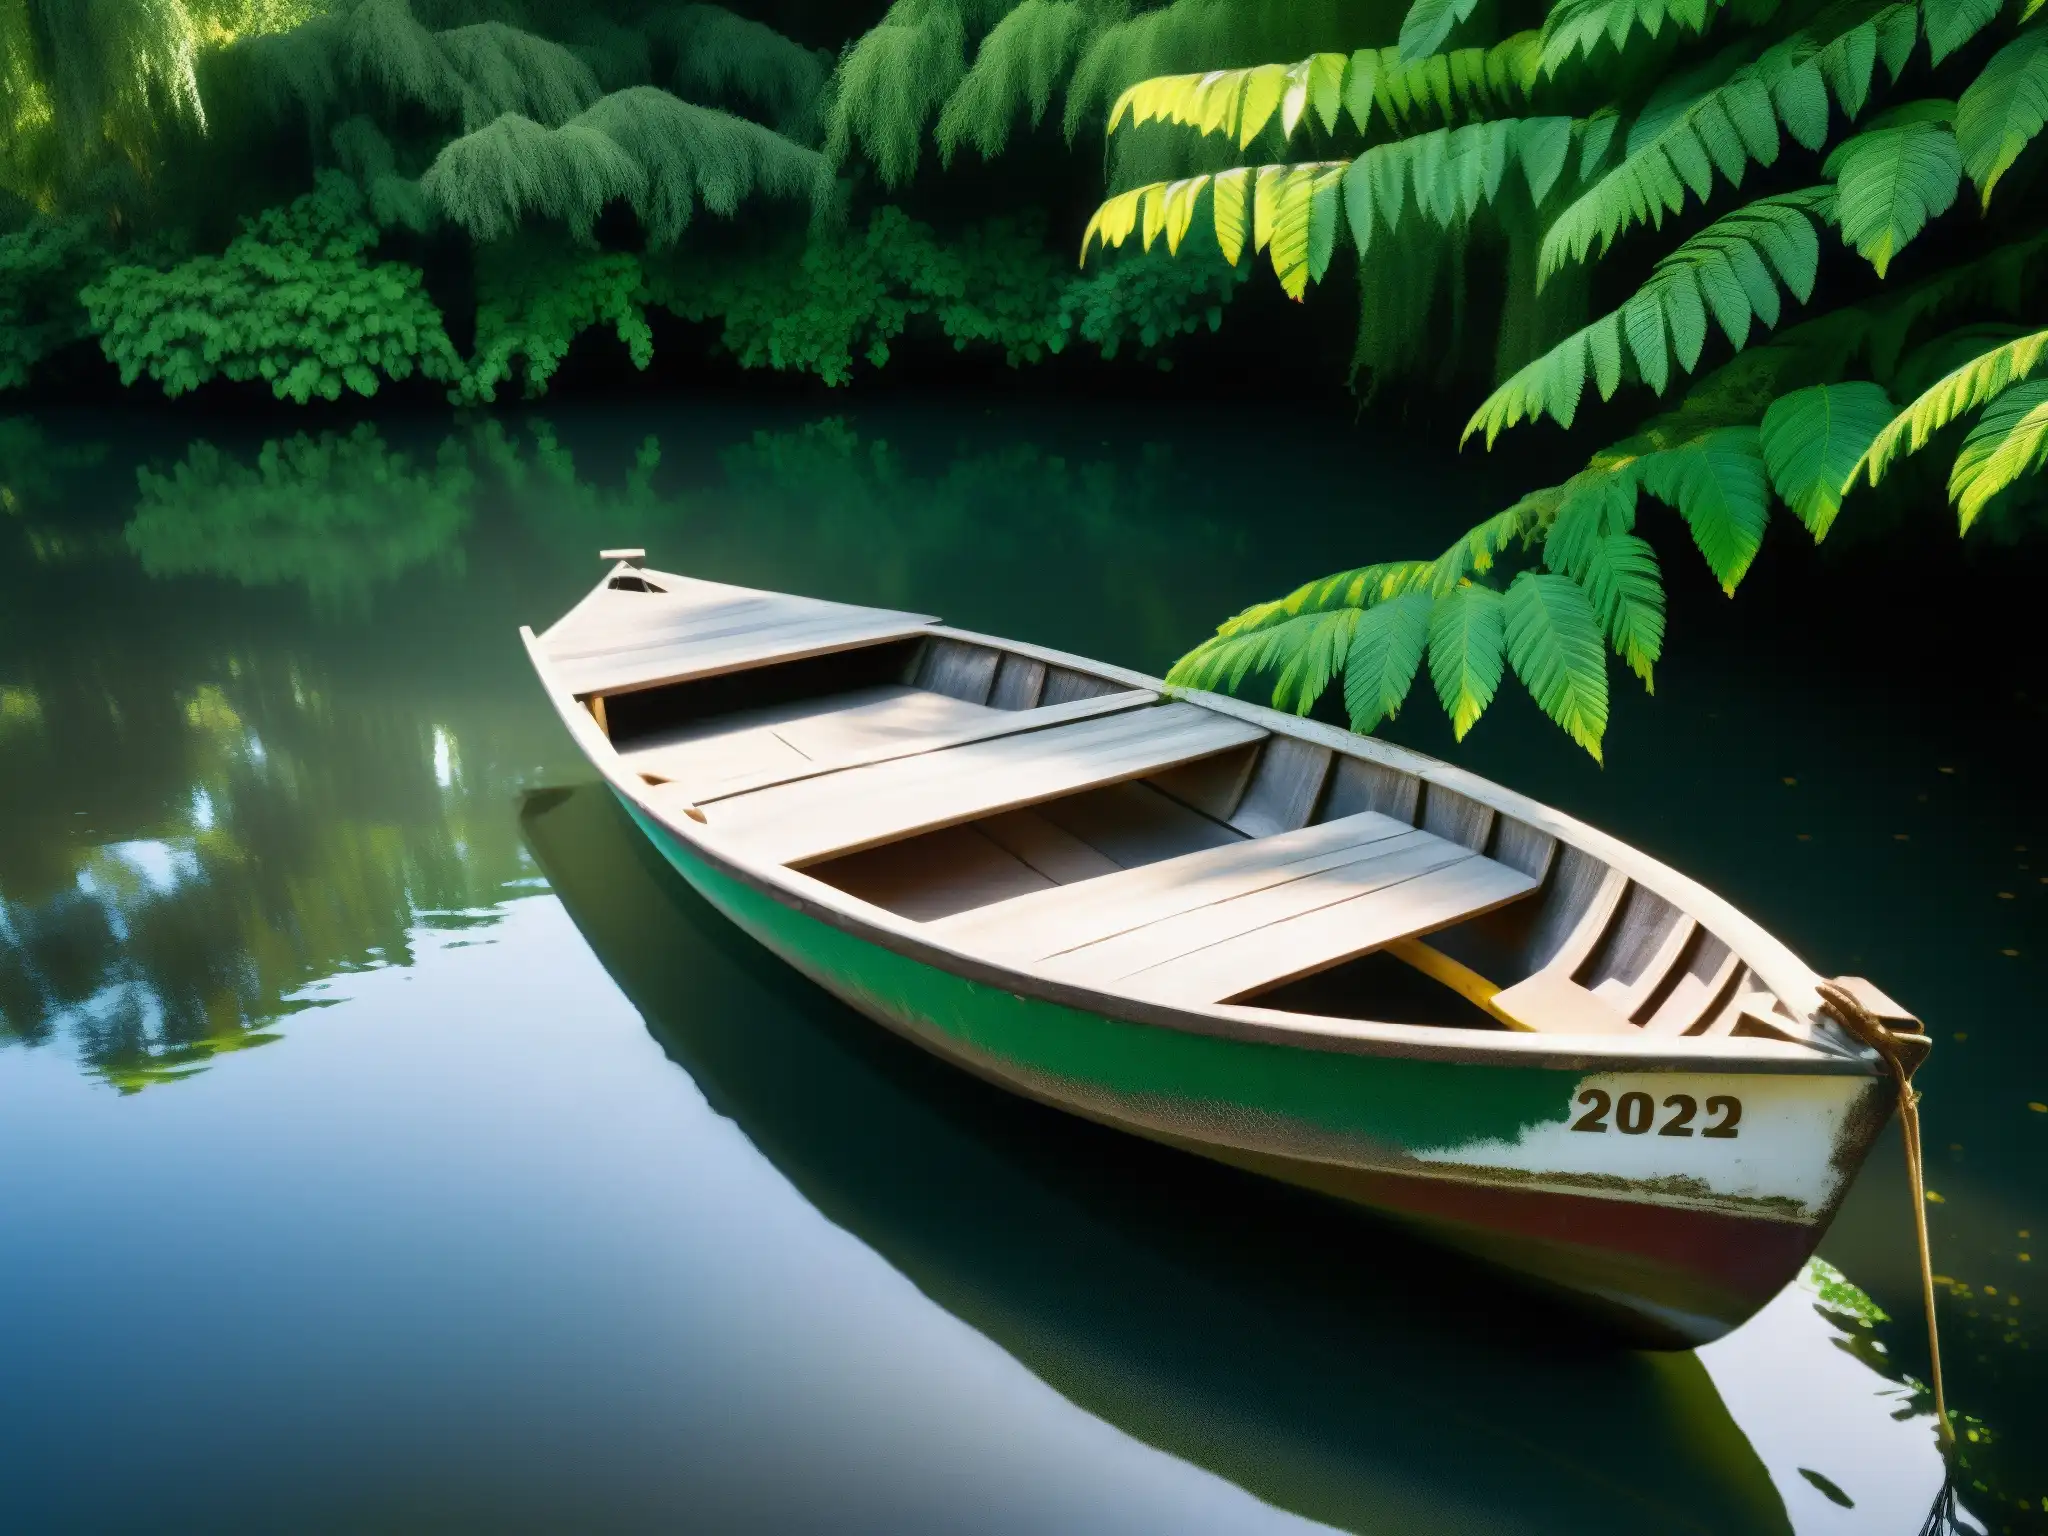 Un bote antiguo y desgastado flota en las tranquilas aguas de Tlalpan, rodeado de exuberante vegetación